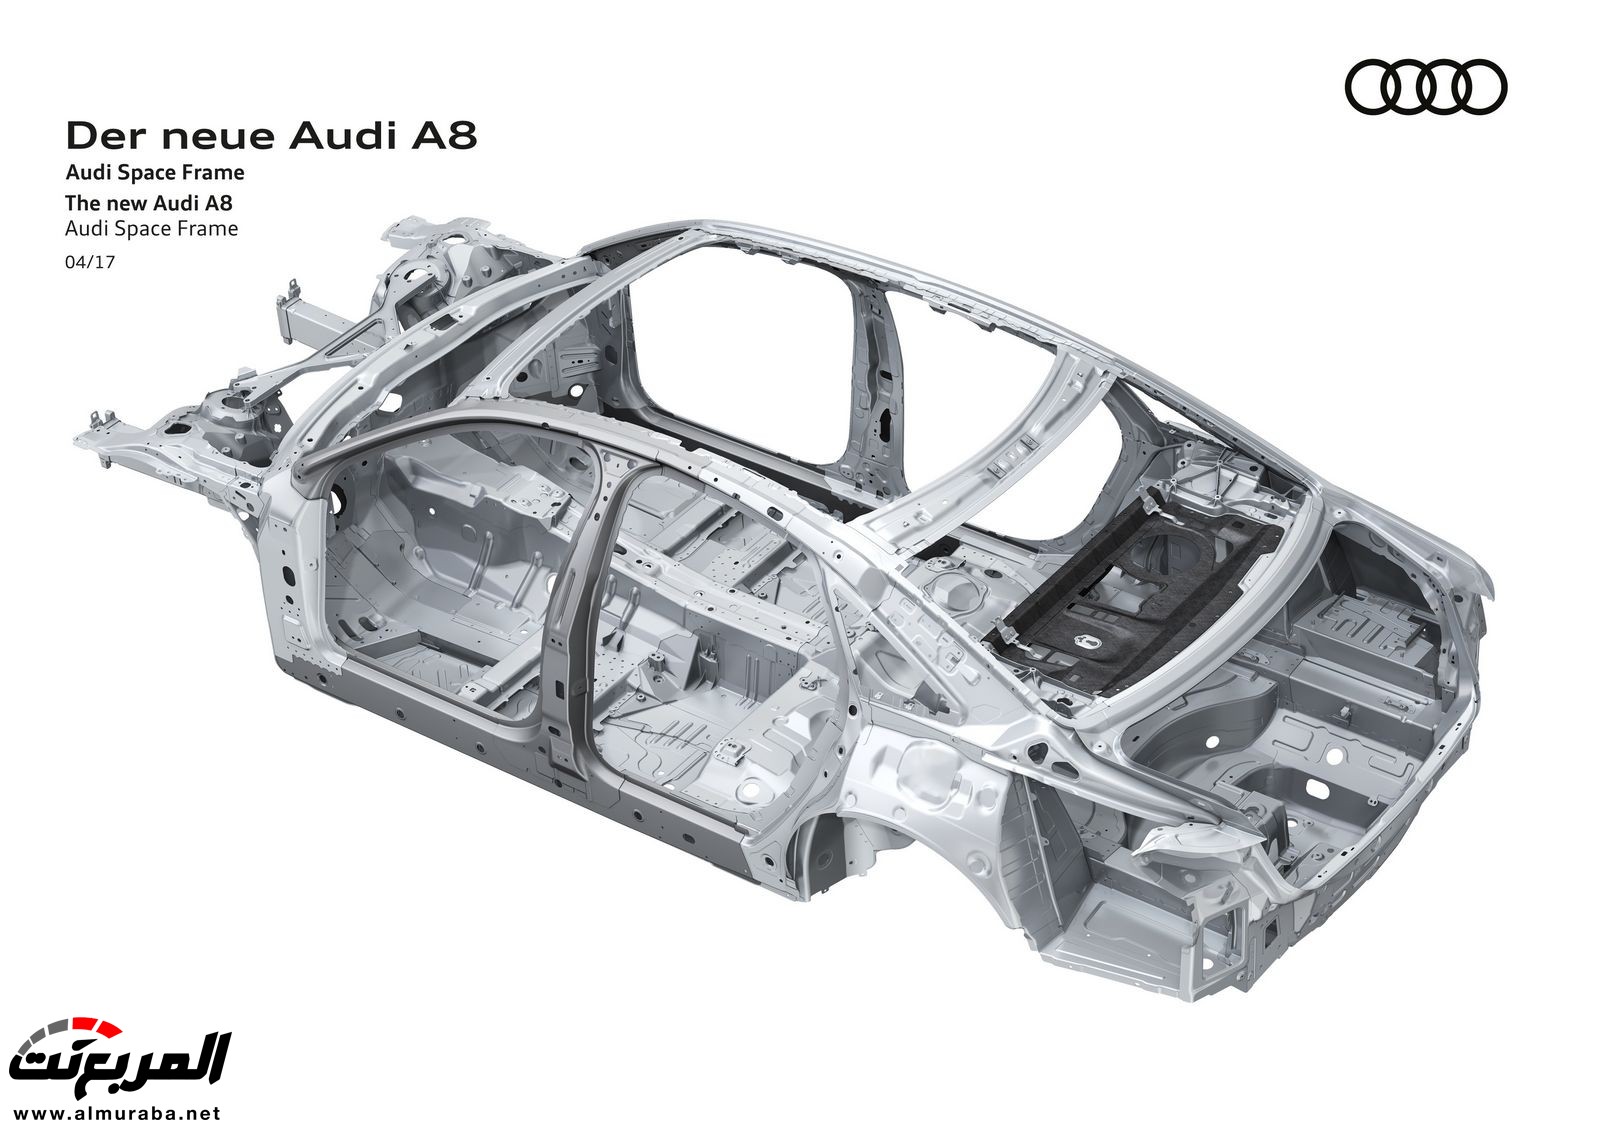 أودي A8 2018 الجديدة كلياً تكشف نفسها بتصميم وتقنيات متطورة "معلومات + 100 صورة" Audi A8 66